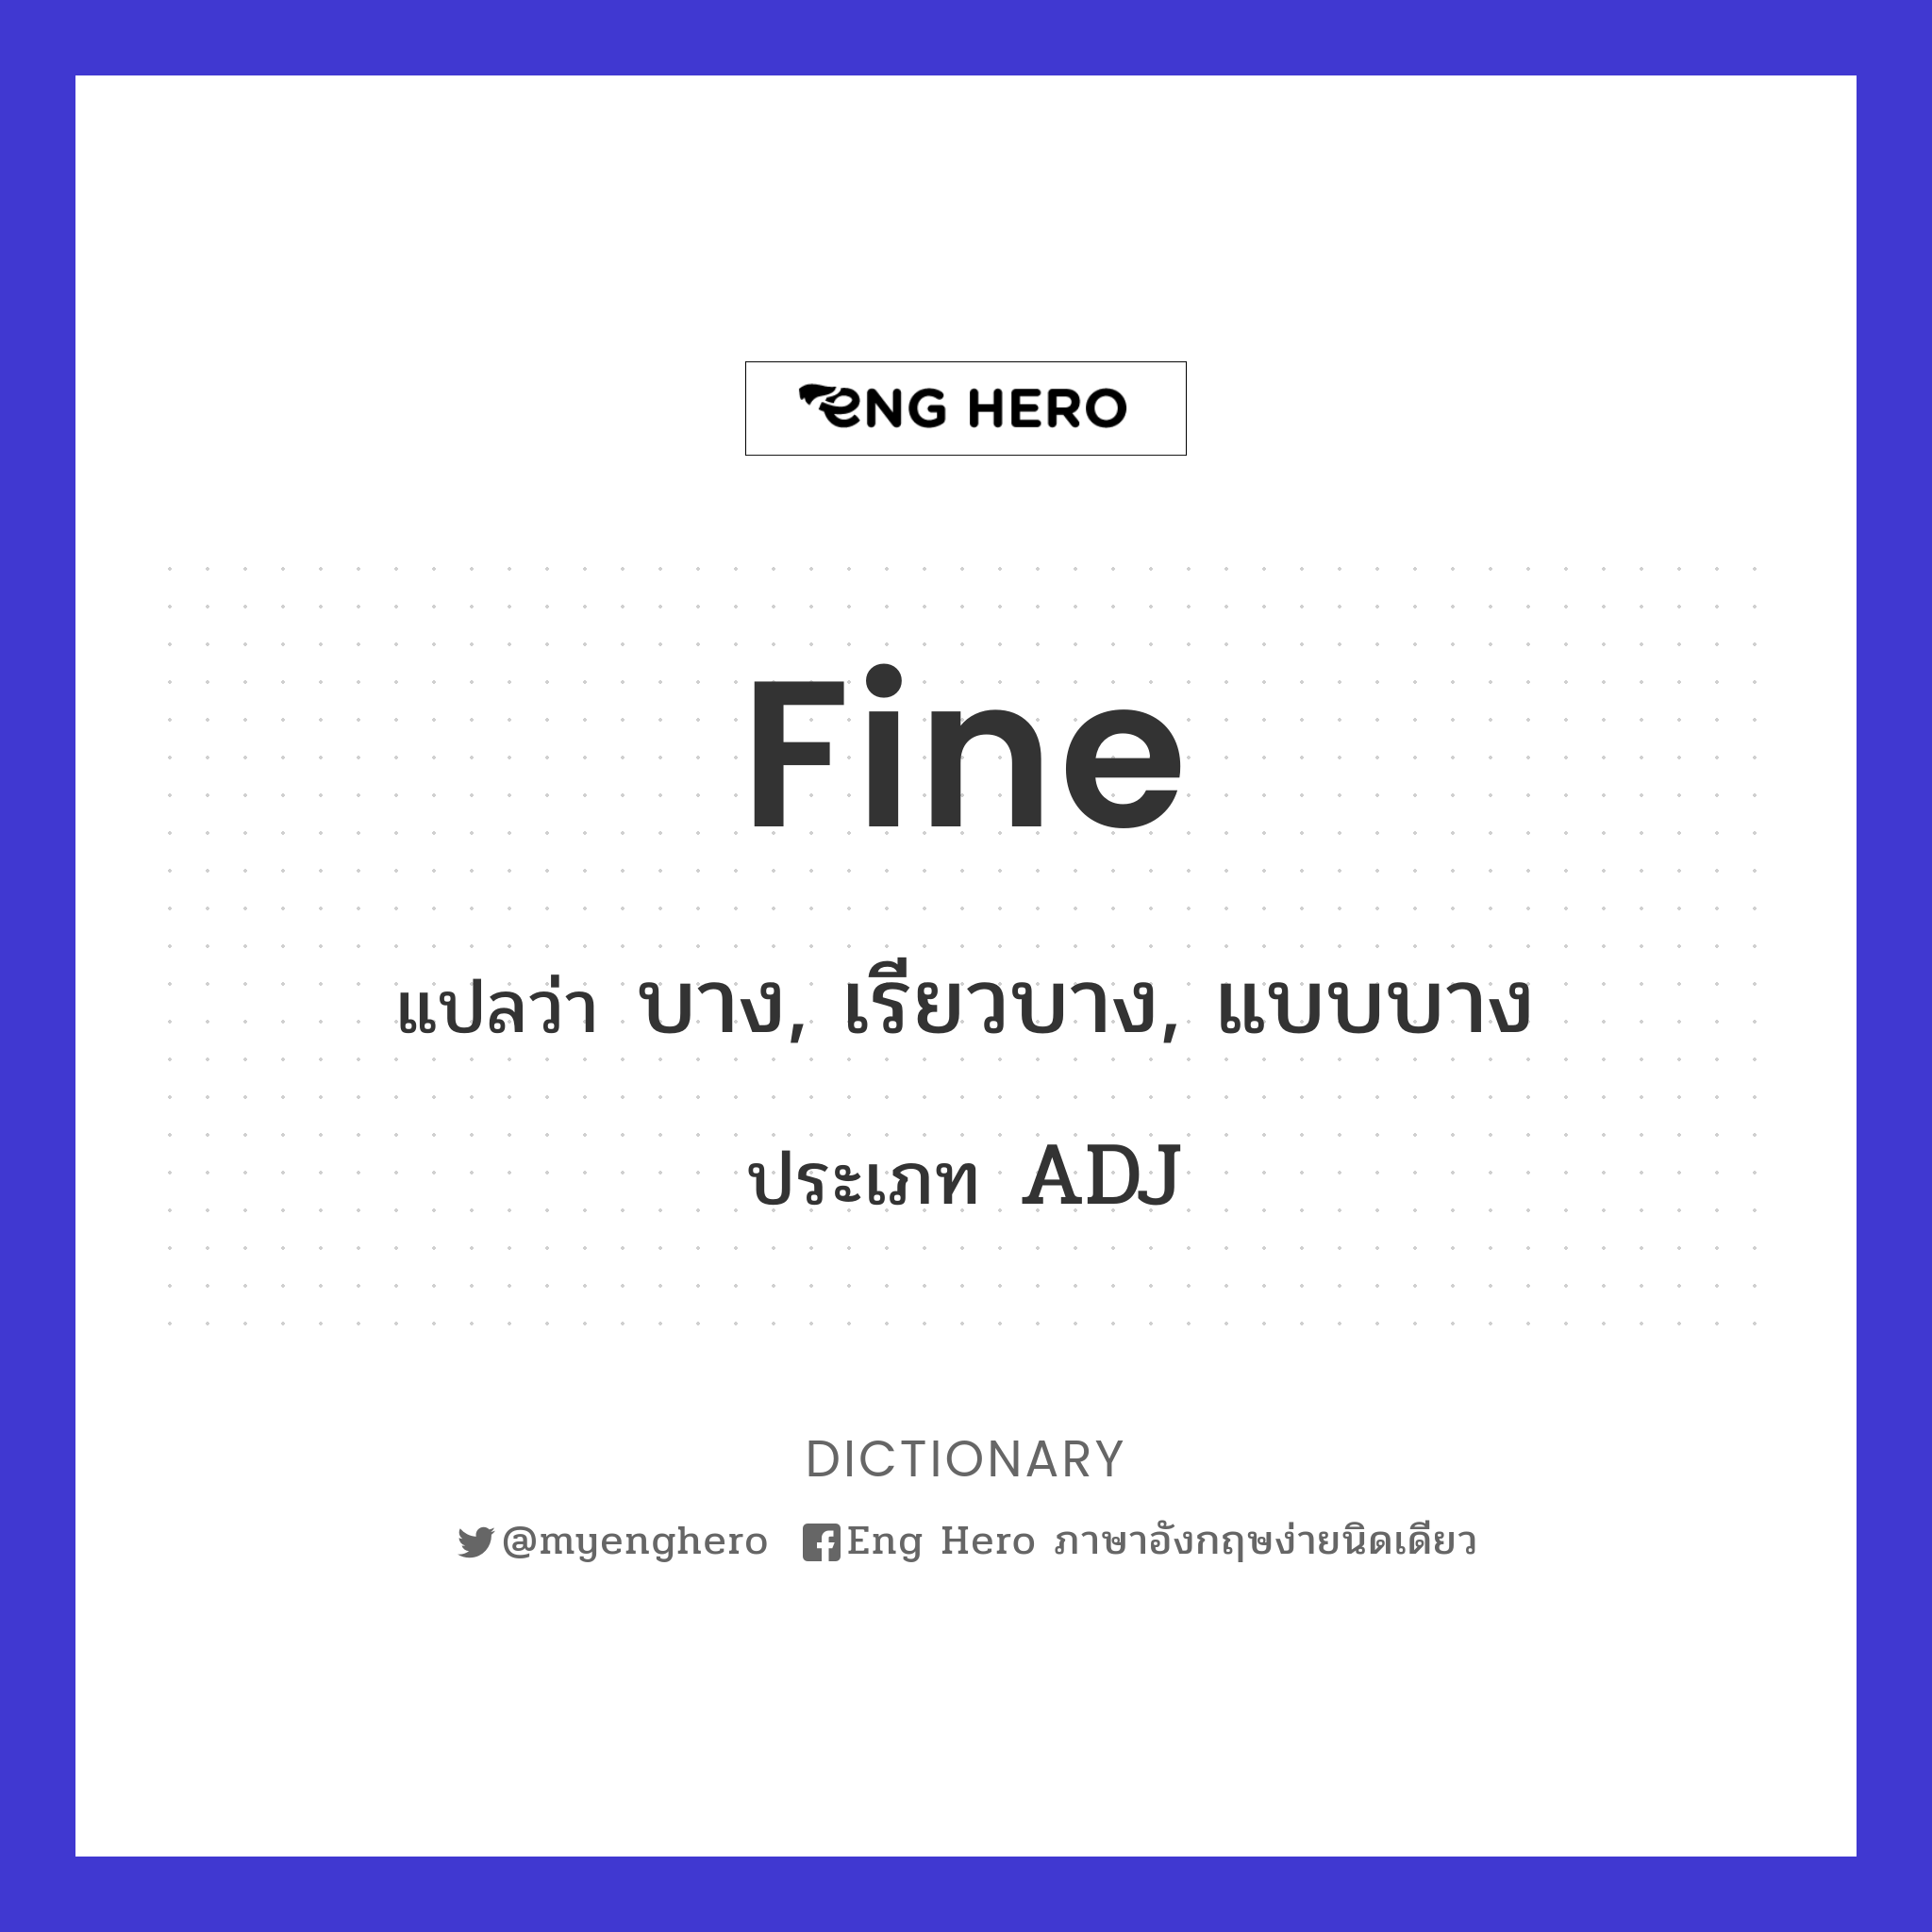 fine